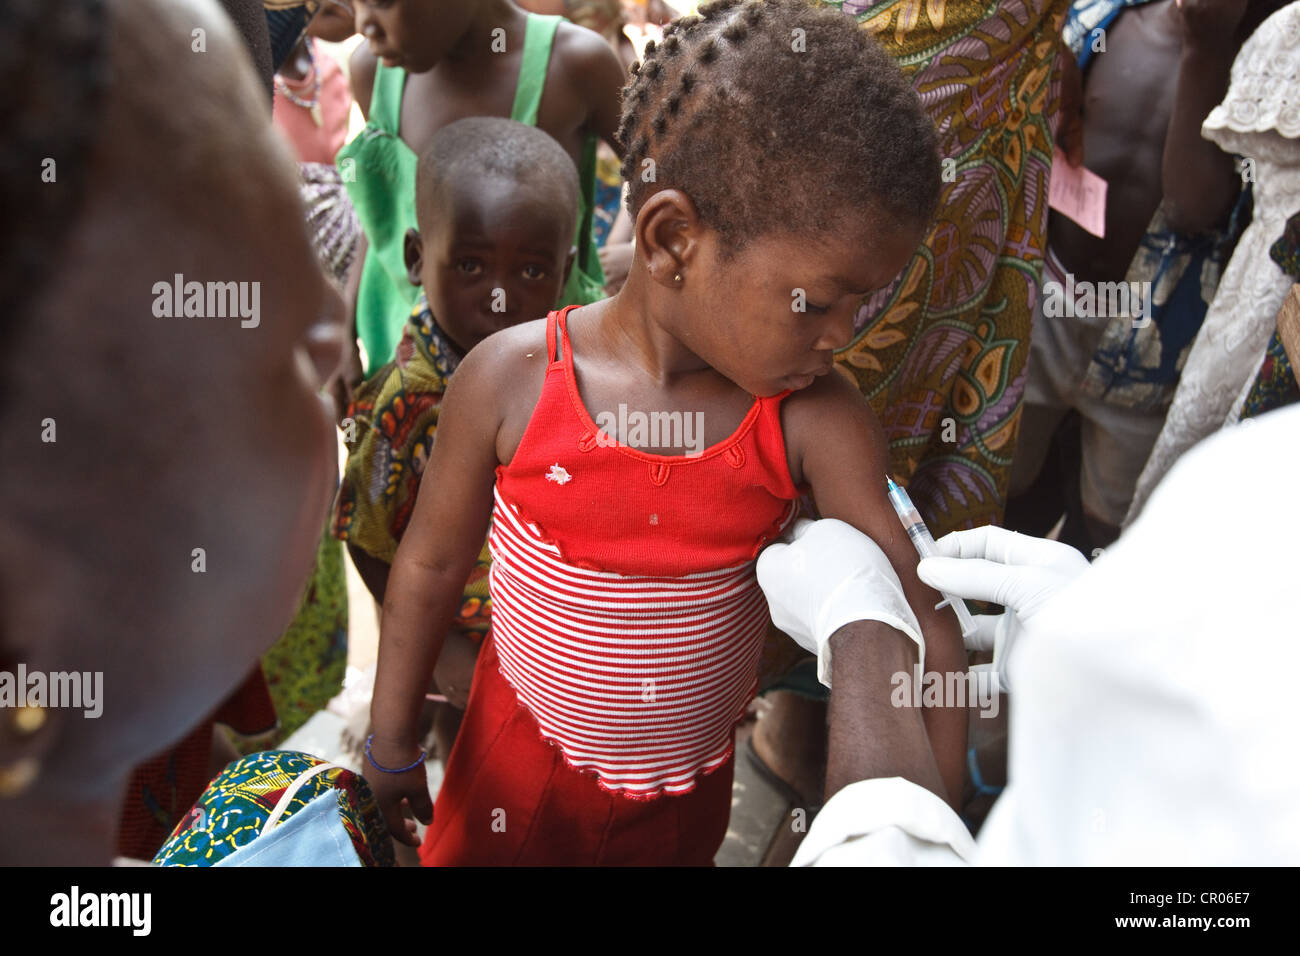 Une fille se fait vacciner au cours d'une campagne de vaccination contre la rougeole à l'Panzarani centre de santé dans le village de Panzarani Banque D'Images